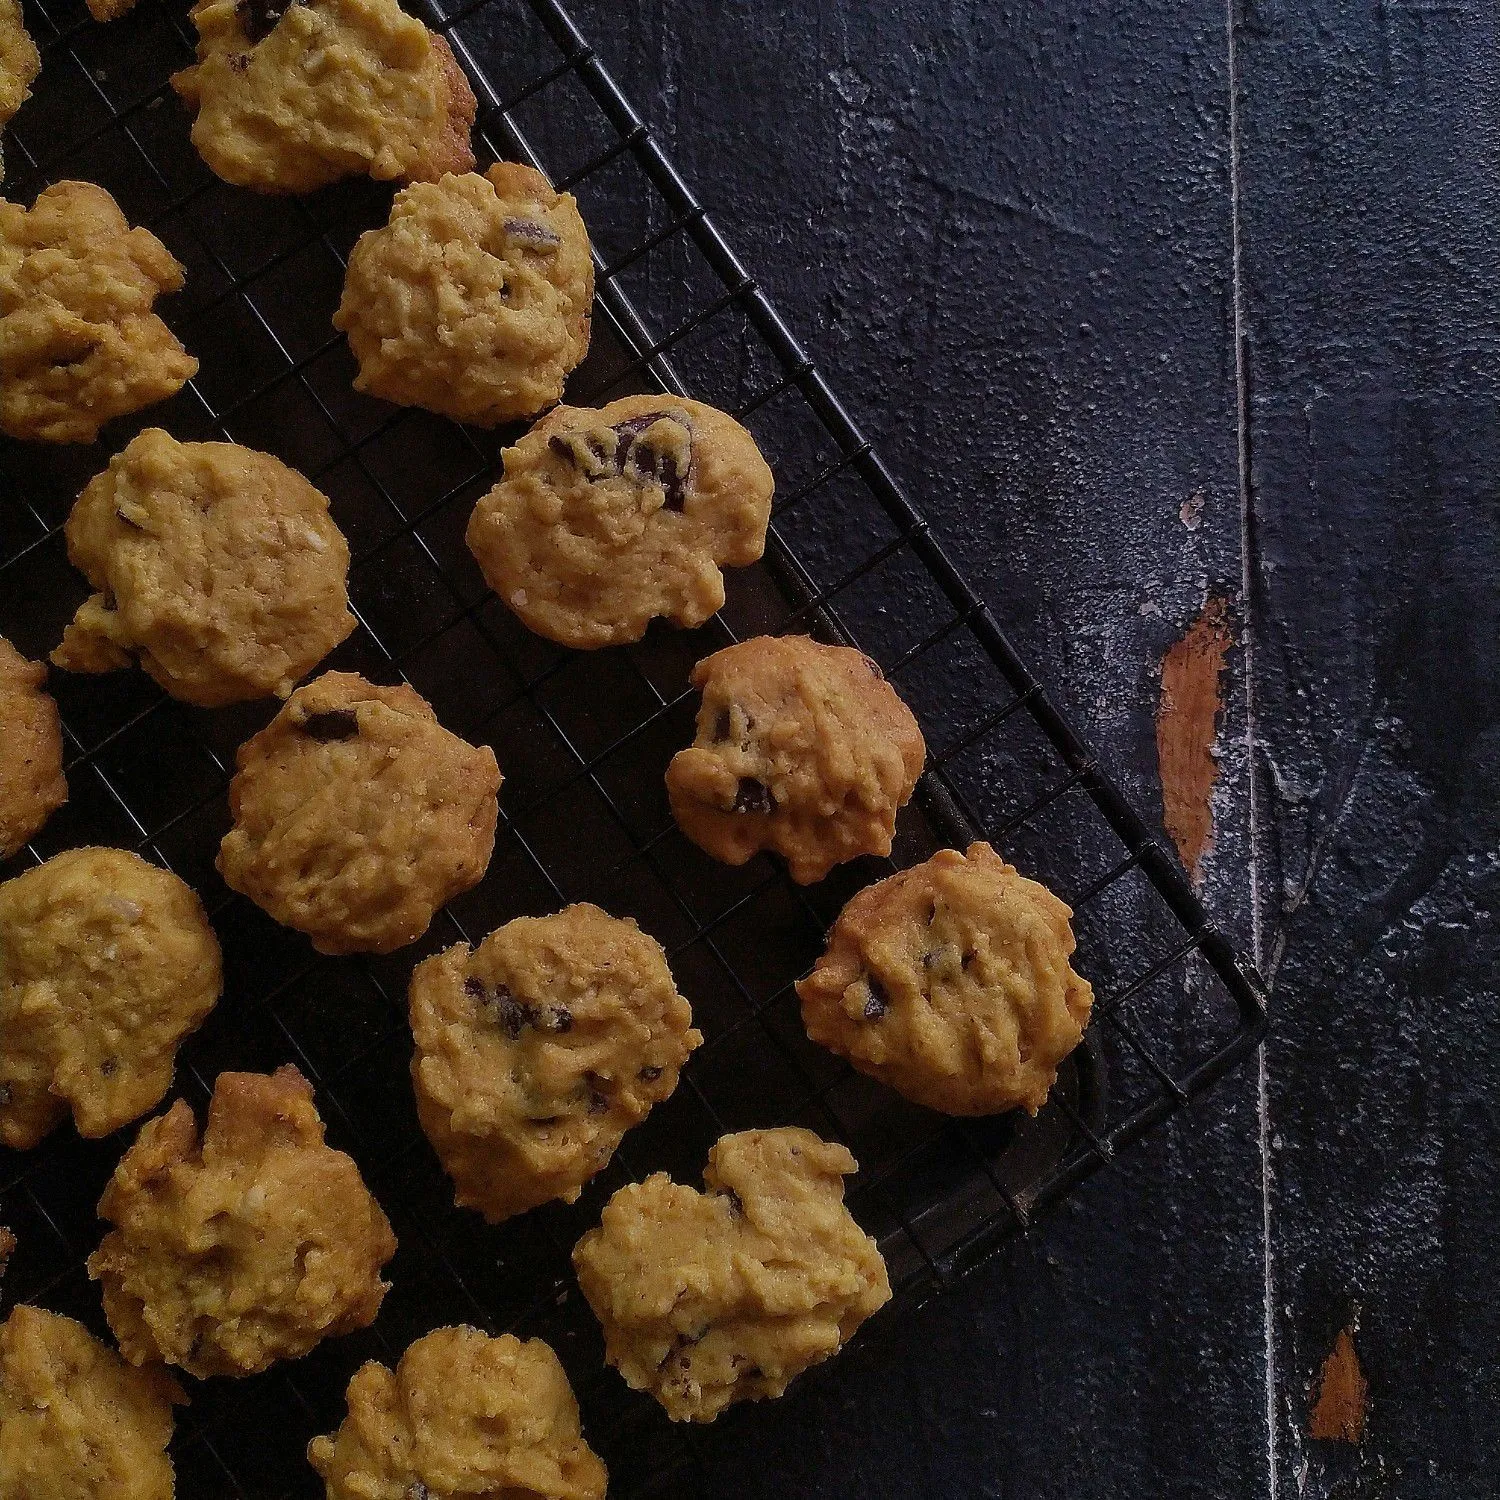 Choconut Cookies #JagoMasakMinggu11